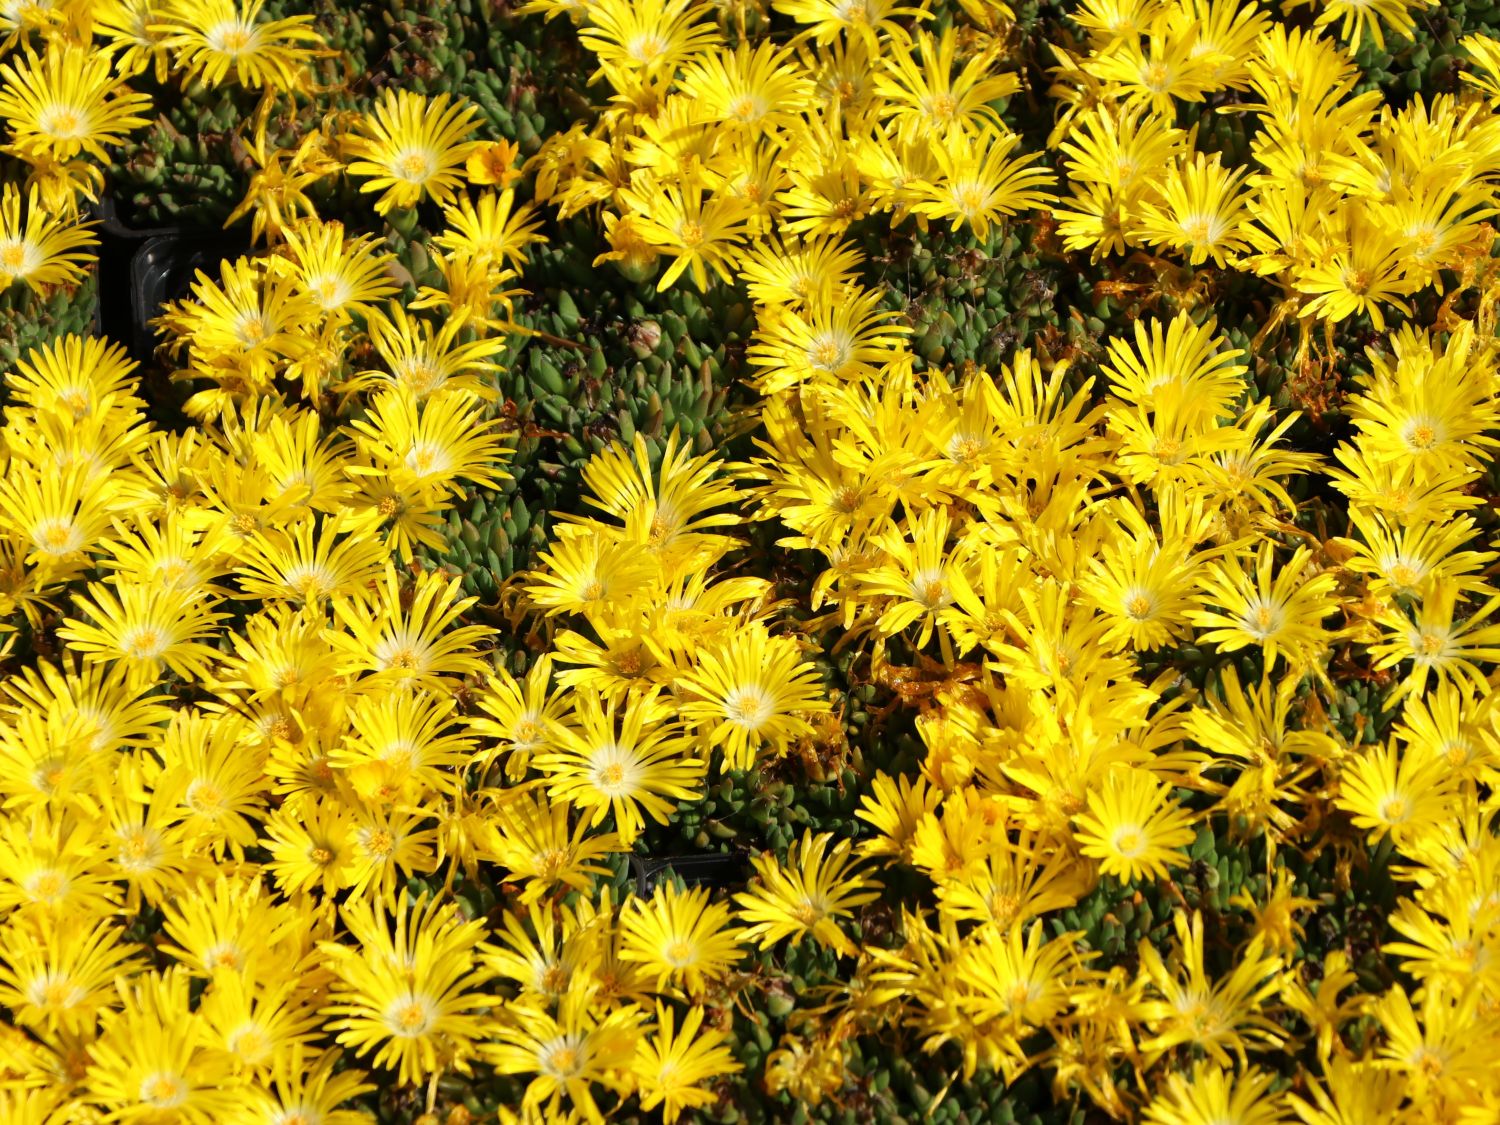 DelospermaGRAAF REINET 1 x Staude Pflanze Mittagsblümchen